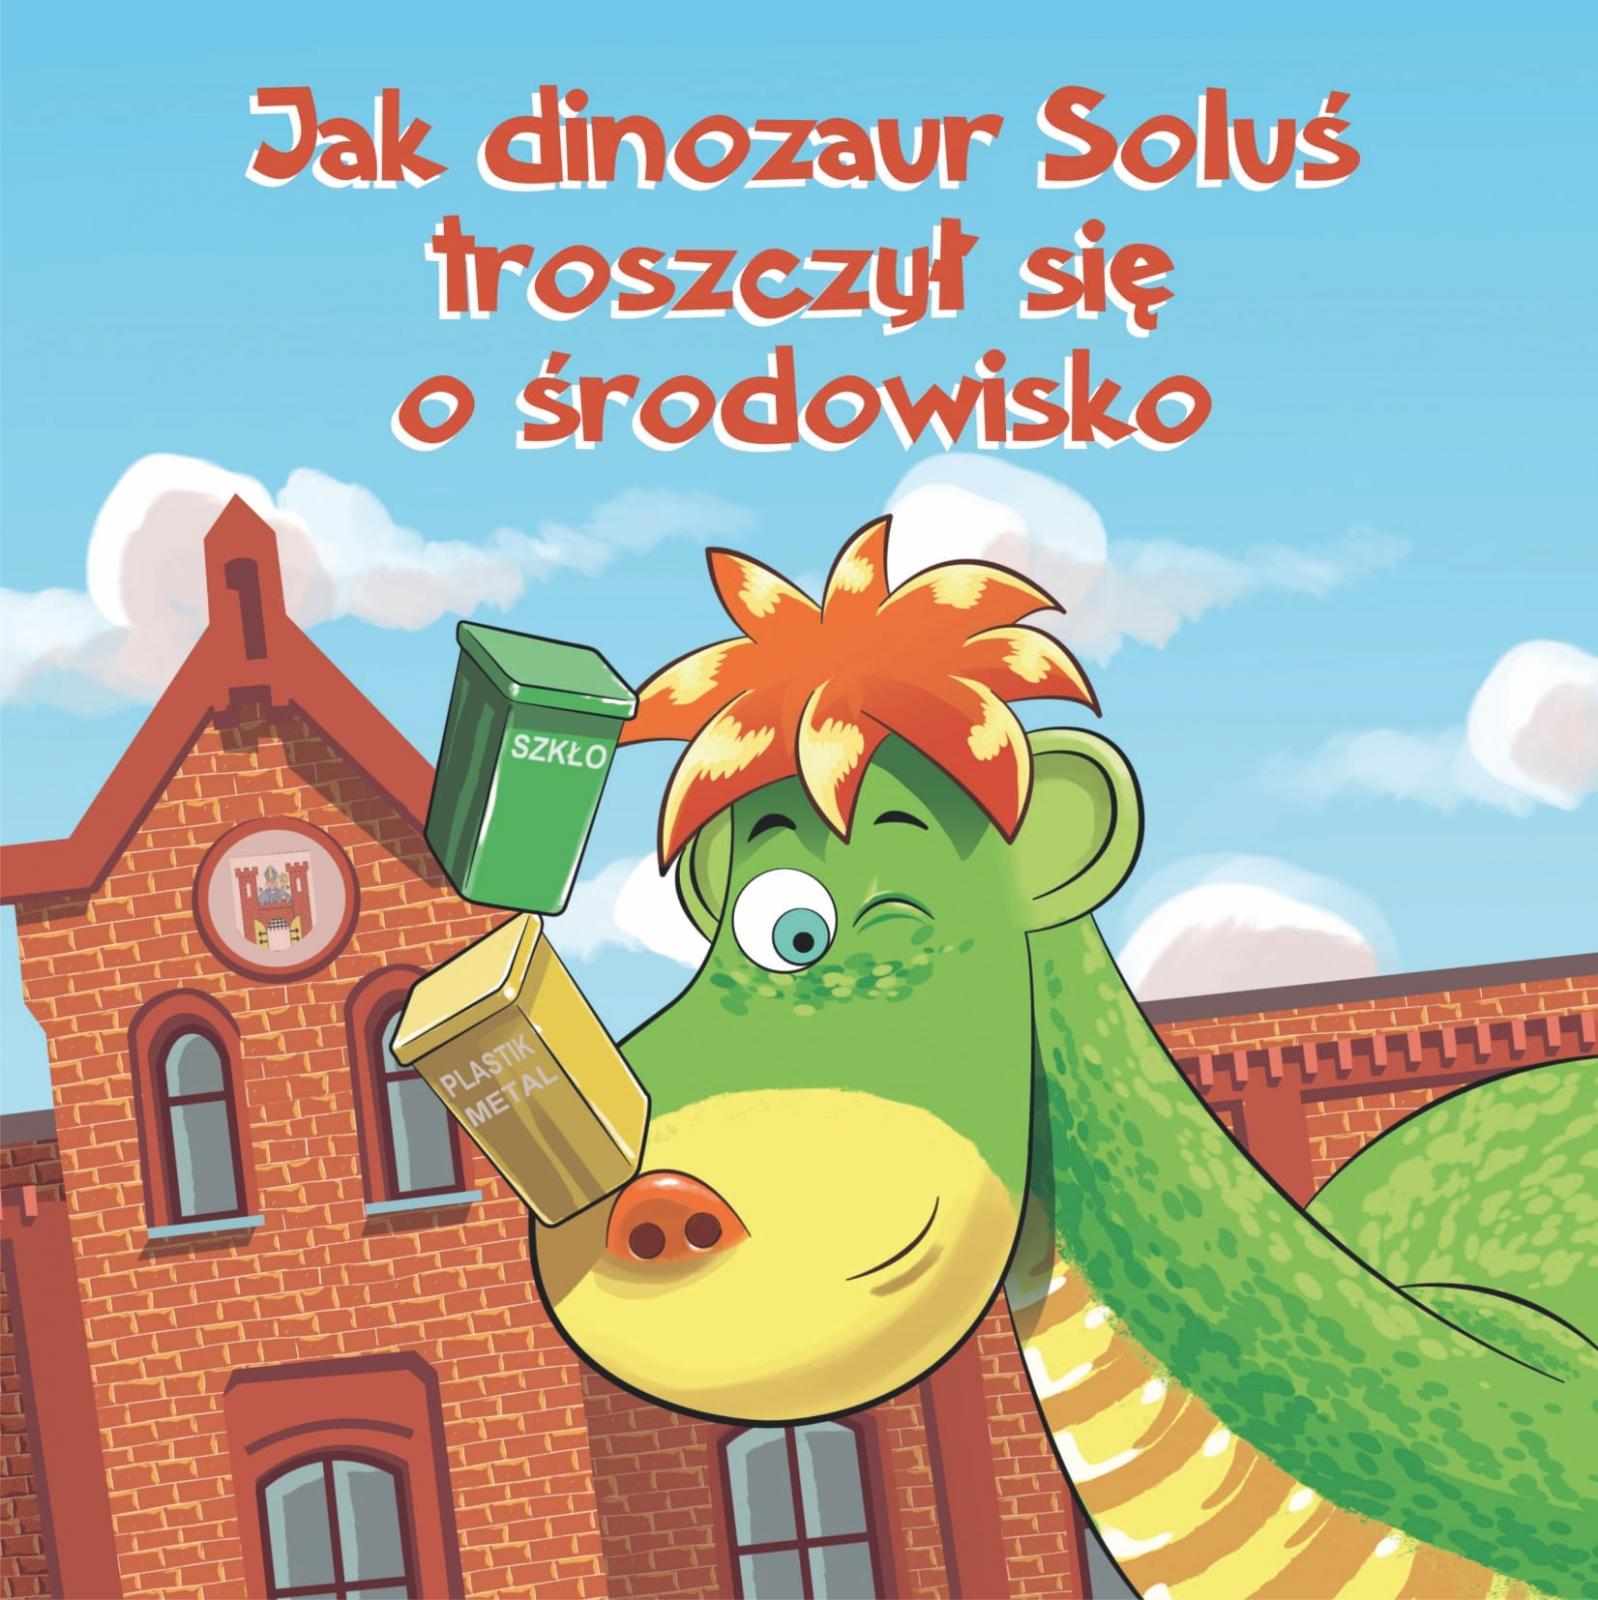 Dinozaur, za nim błekitne niebo i fragment budynku urzędu.